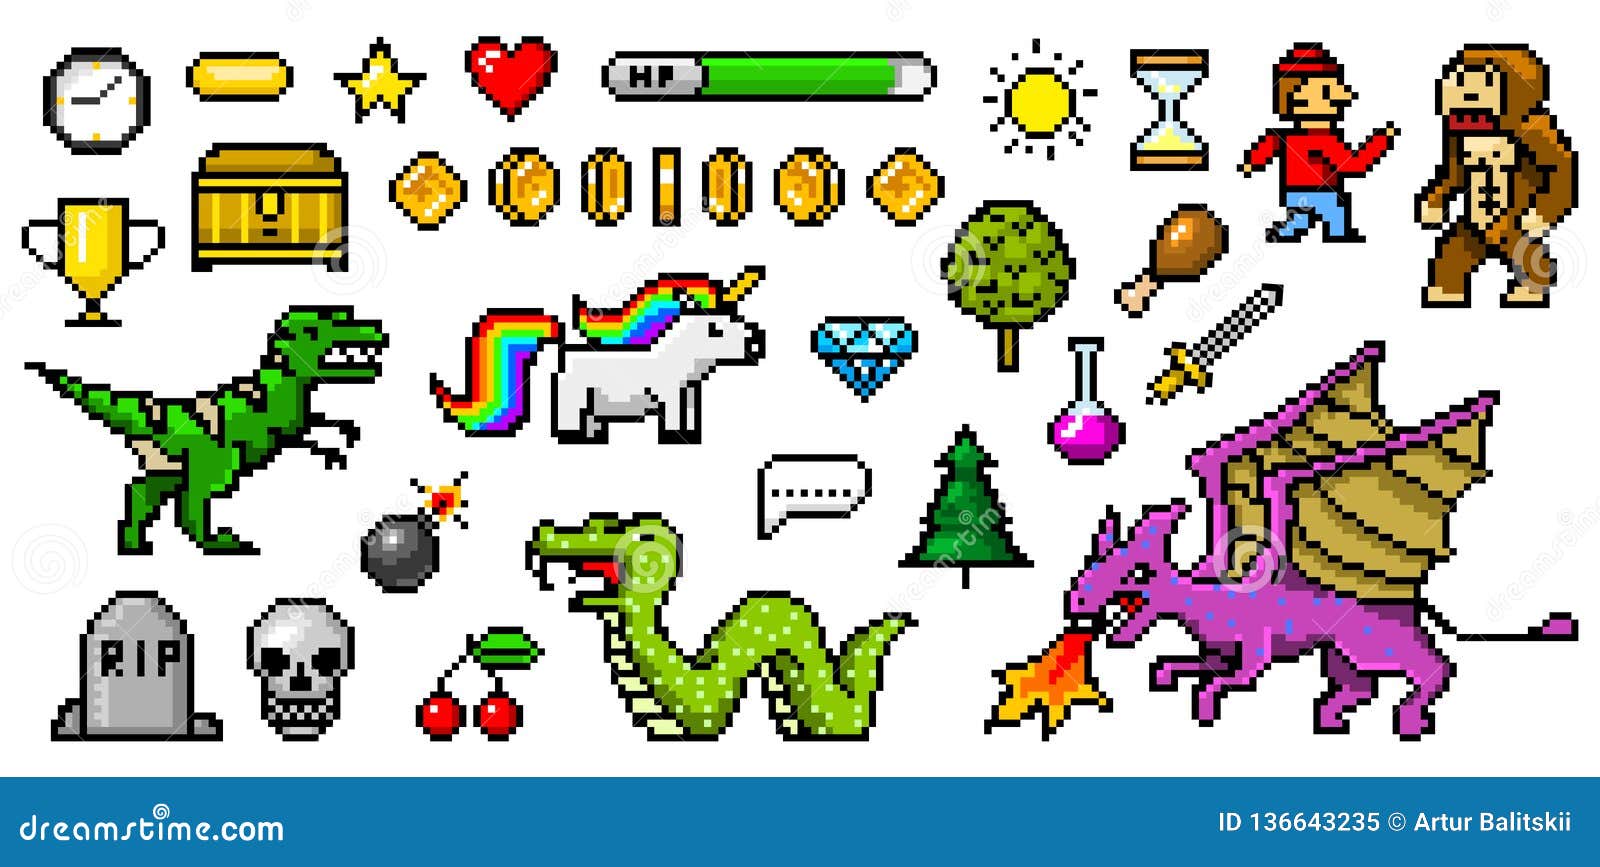 🕹️ Play Free Online Pixel Art Games: Nostalgic 8-Bit Inspired